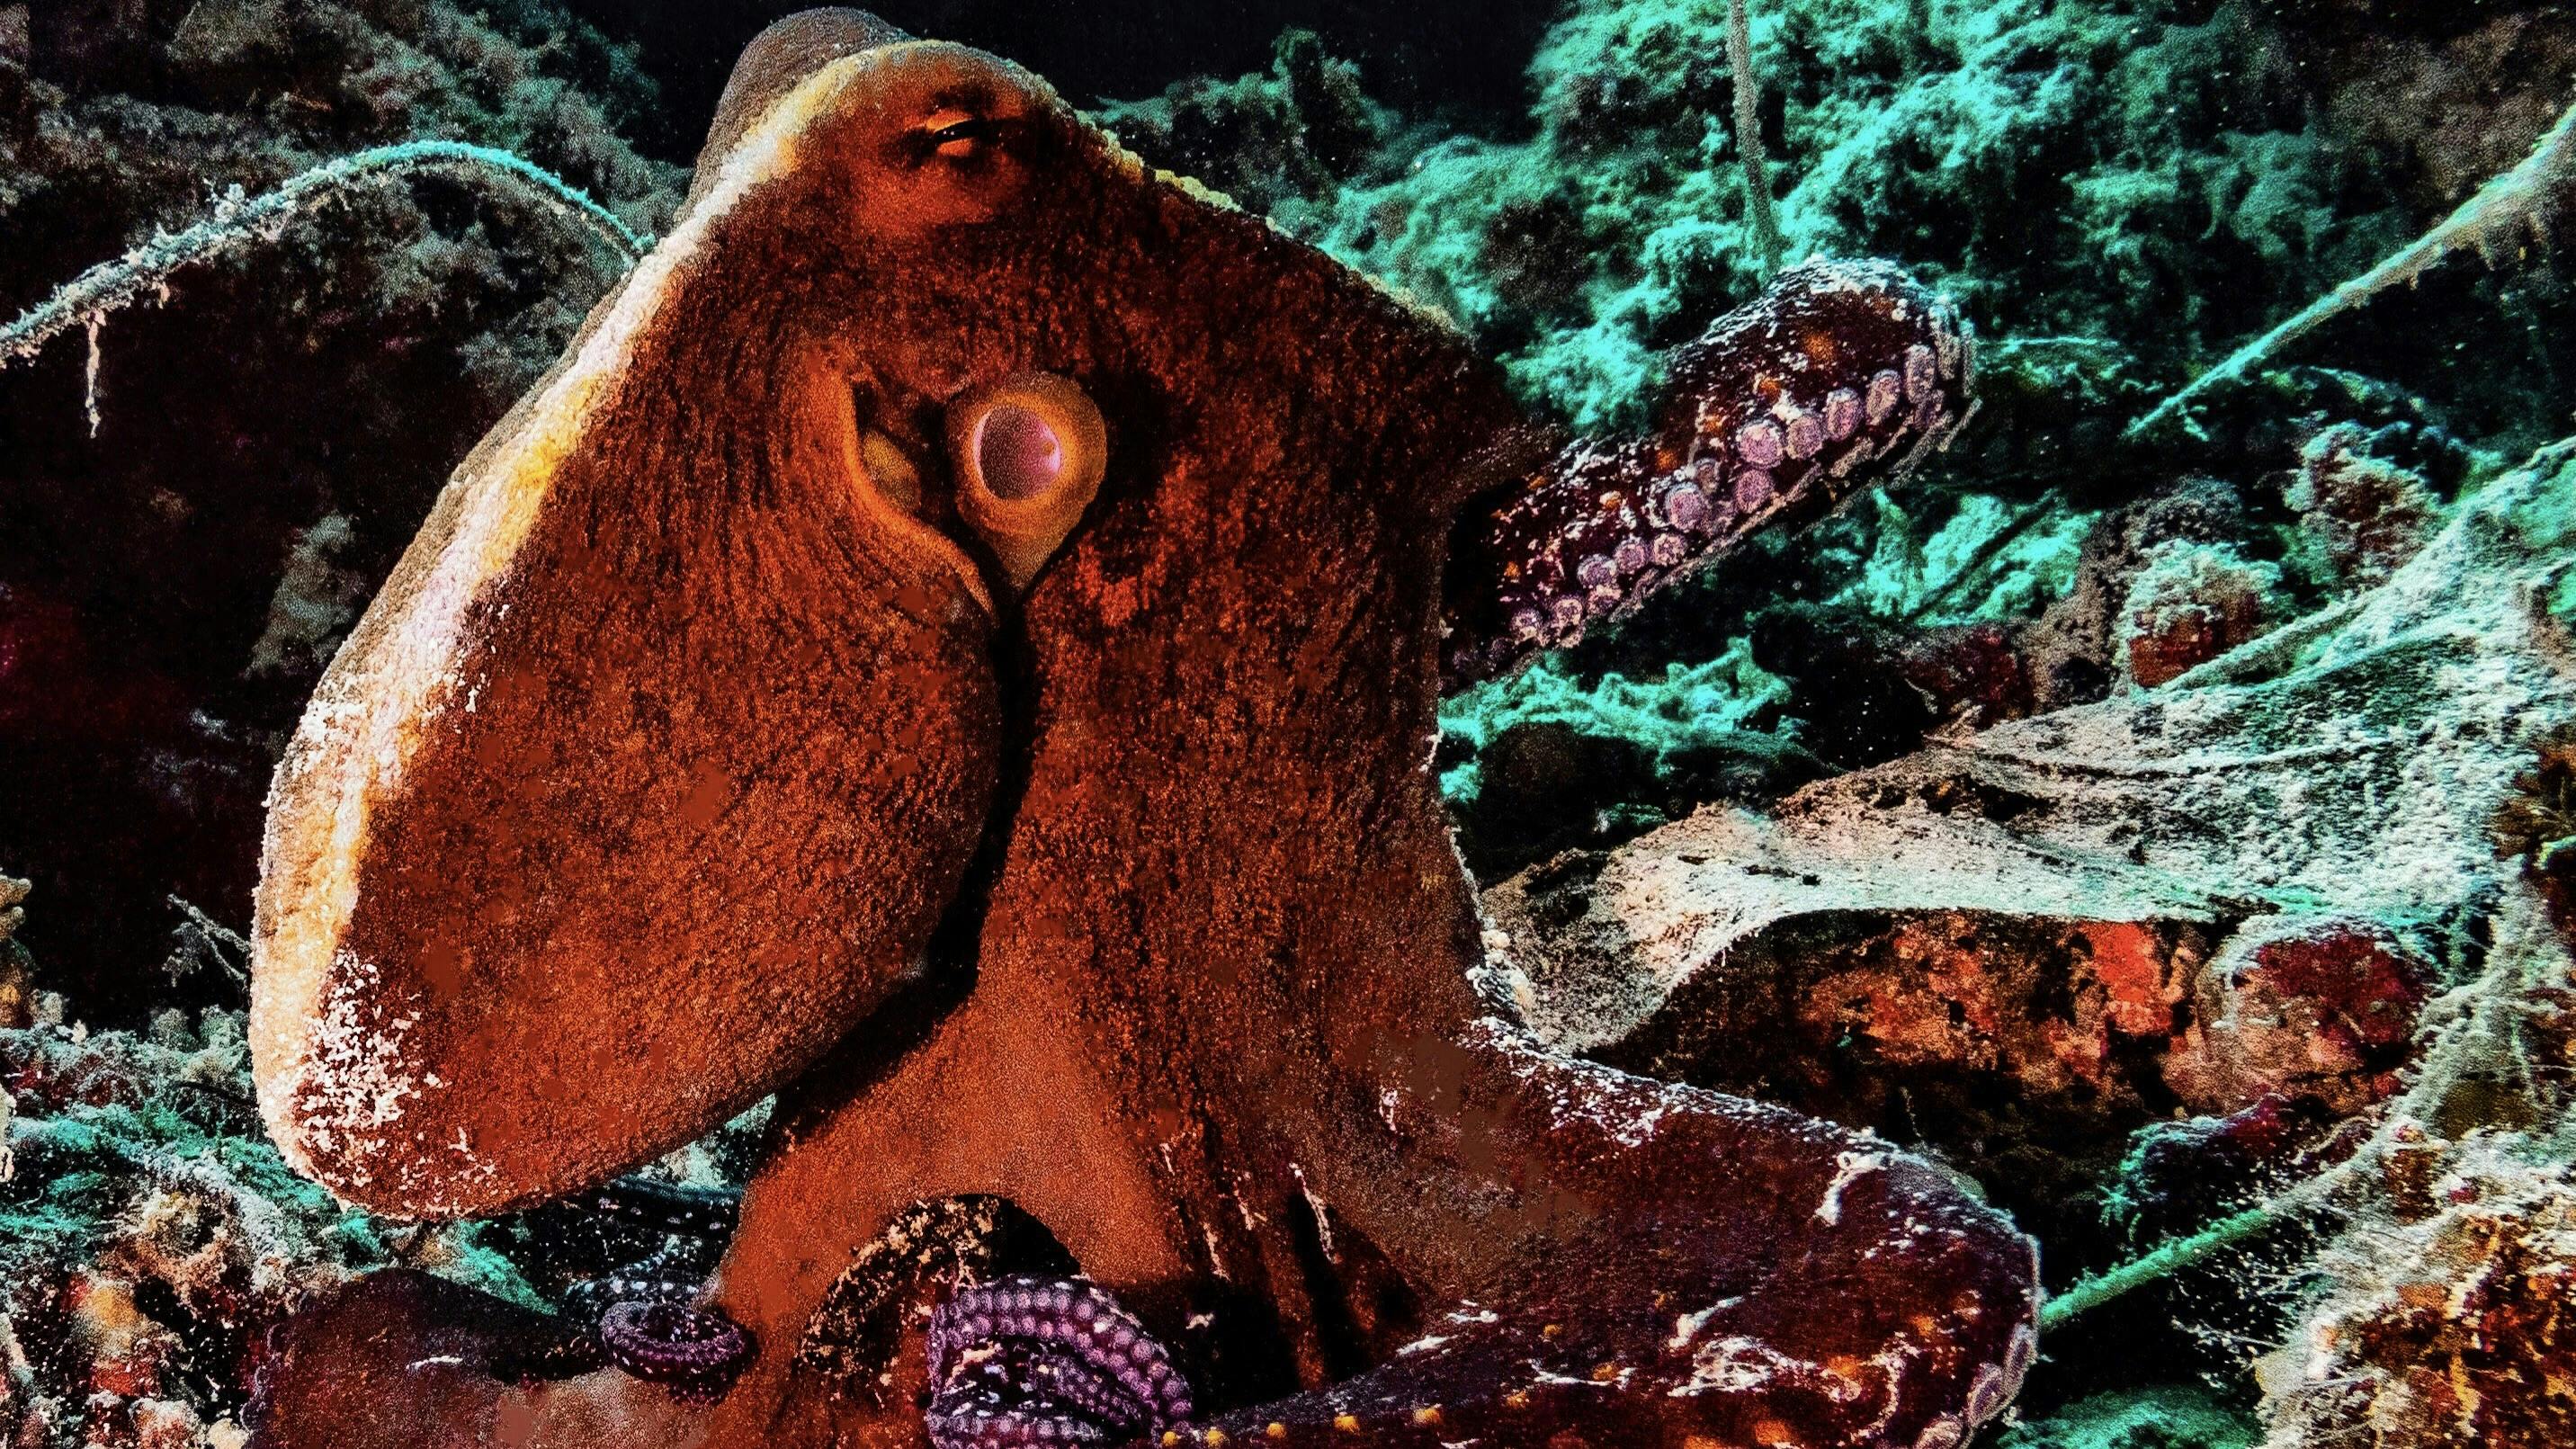 Octopus on the Reef at Kontiki